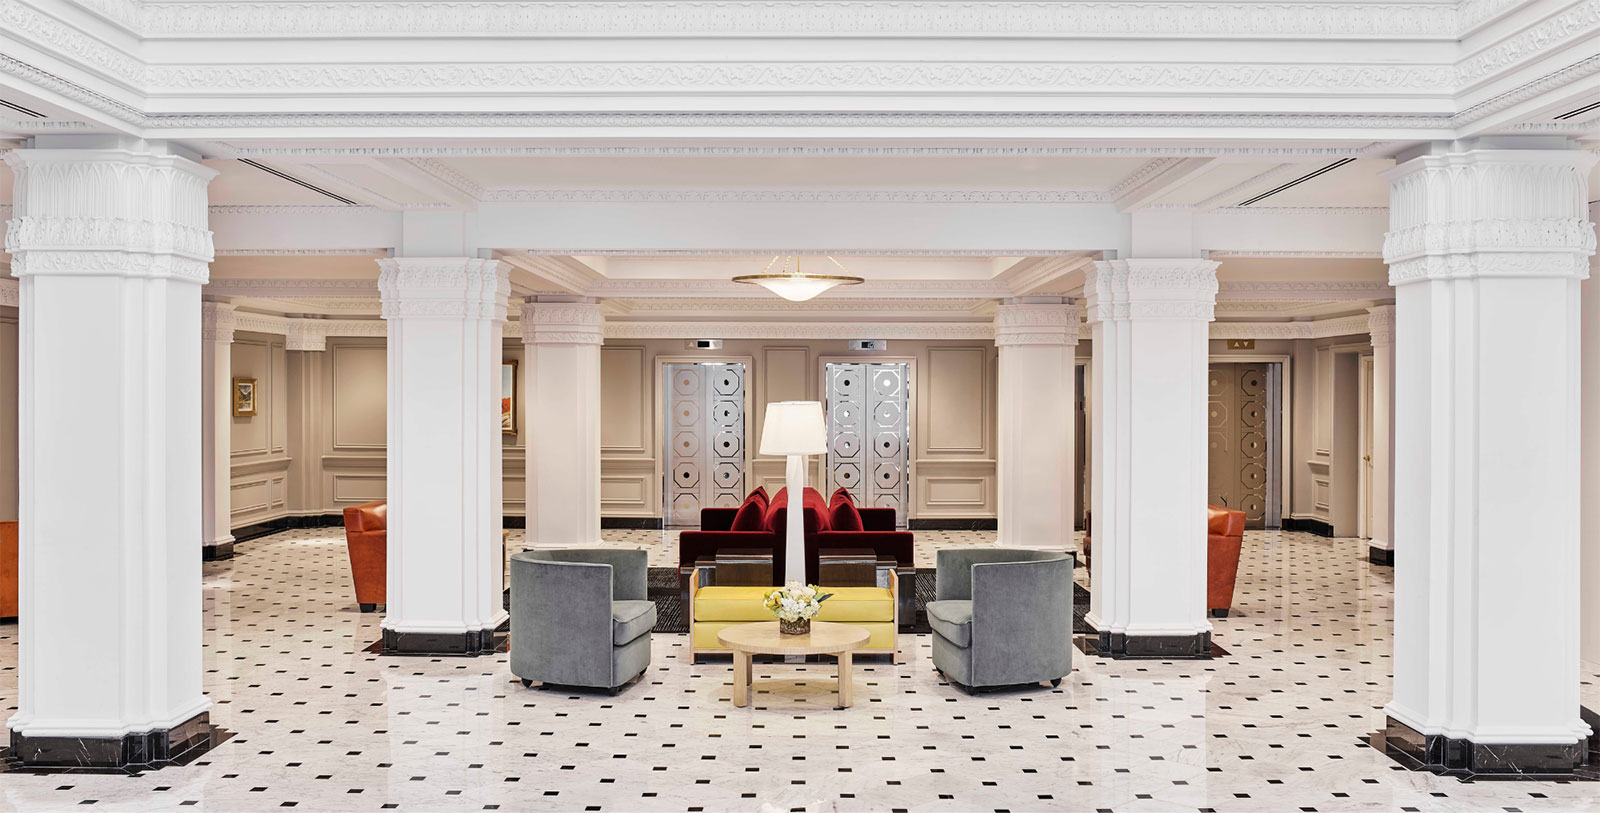 Image of Lobby The Hamilton Hotel in Washington, DC